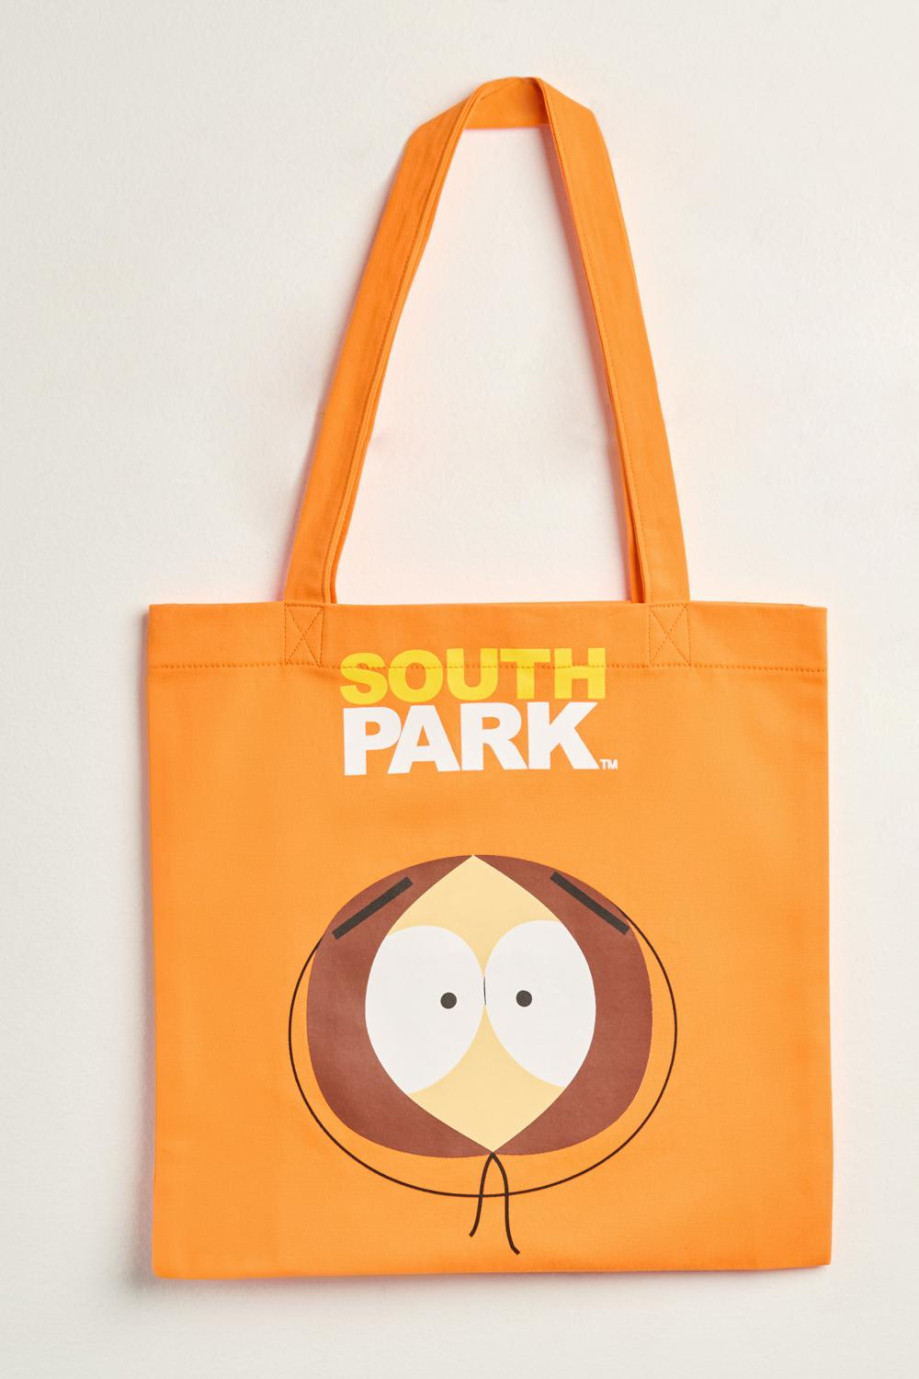 Bolsa unicolor tote bag con diseño de South Park